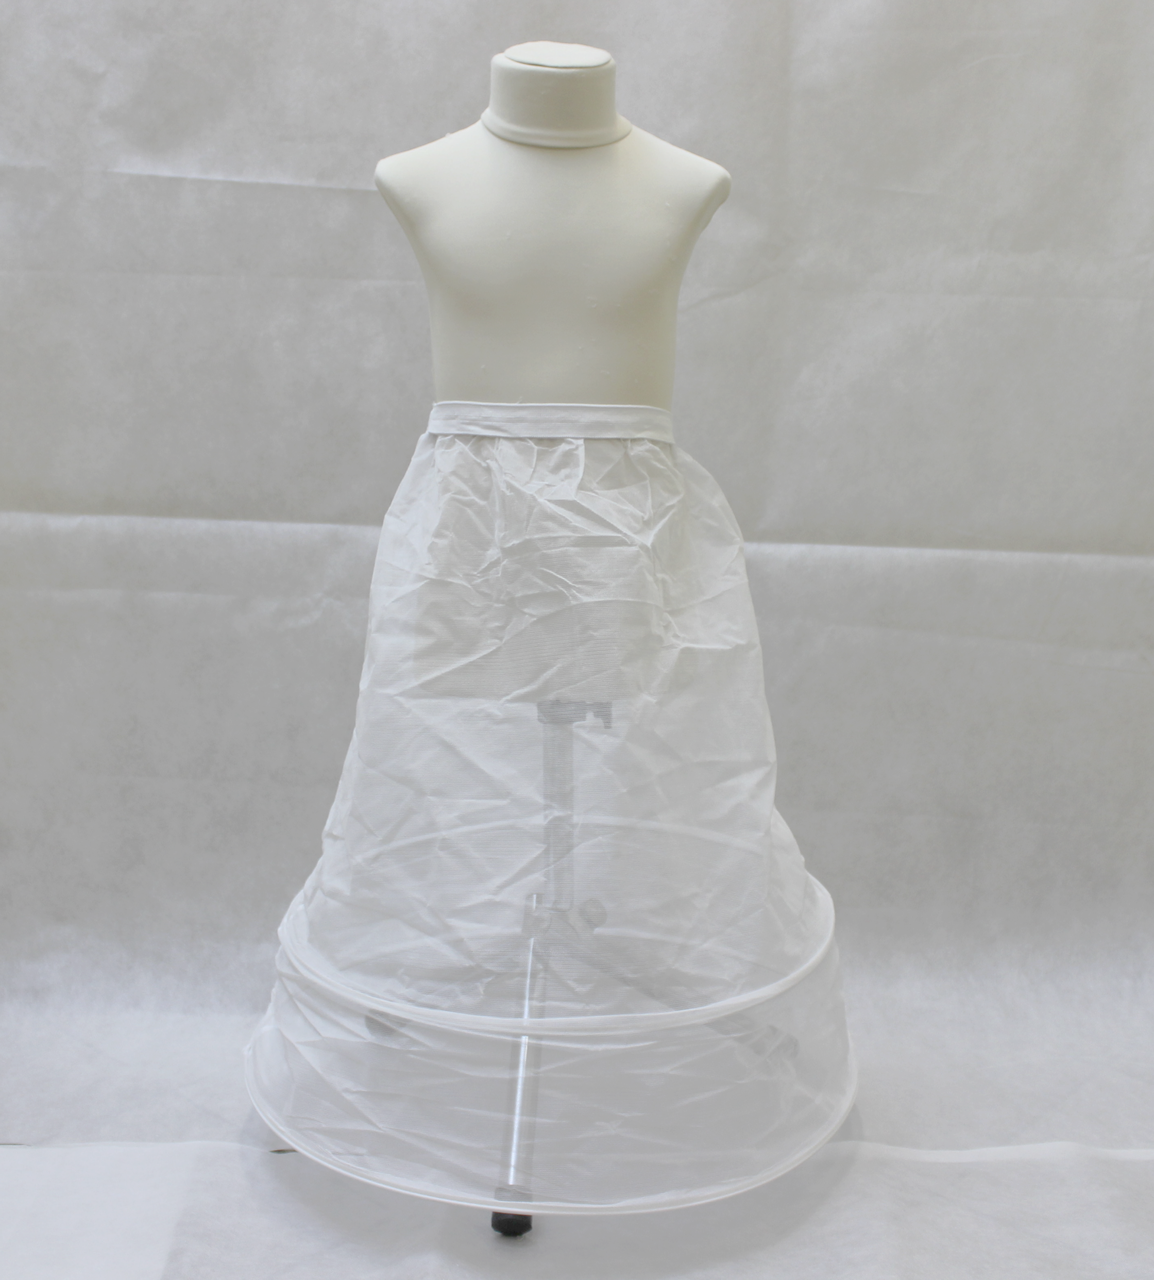 Під'юбник під дитячу сукню 60 см. на 2 кільця MI00009-1 криналин